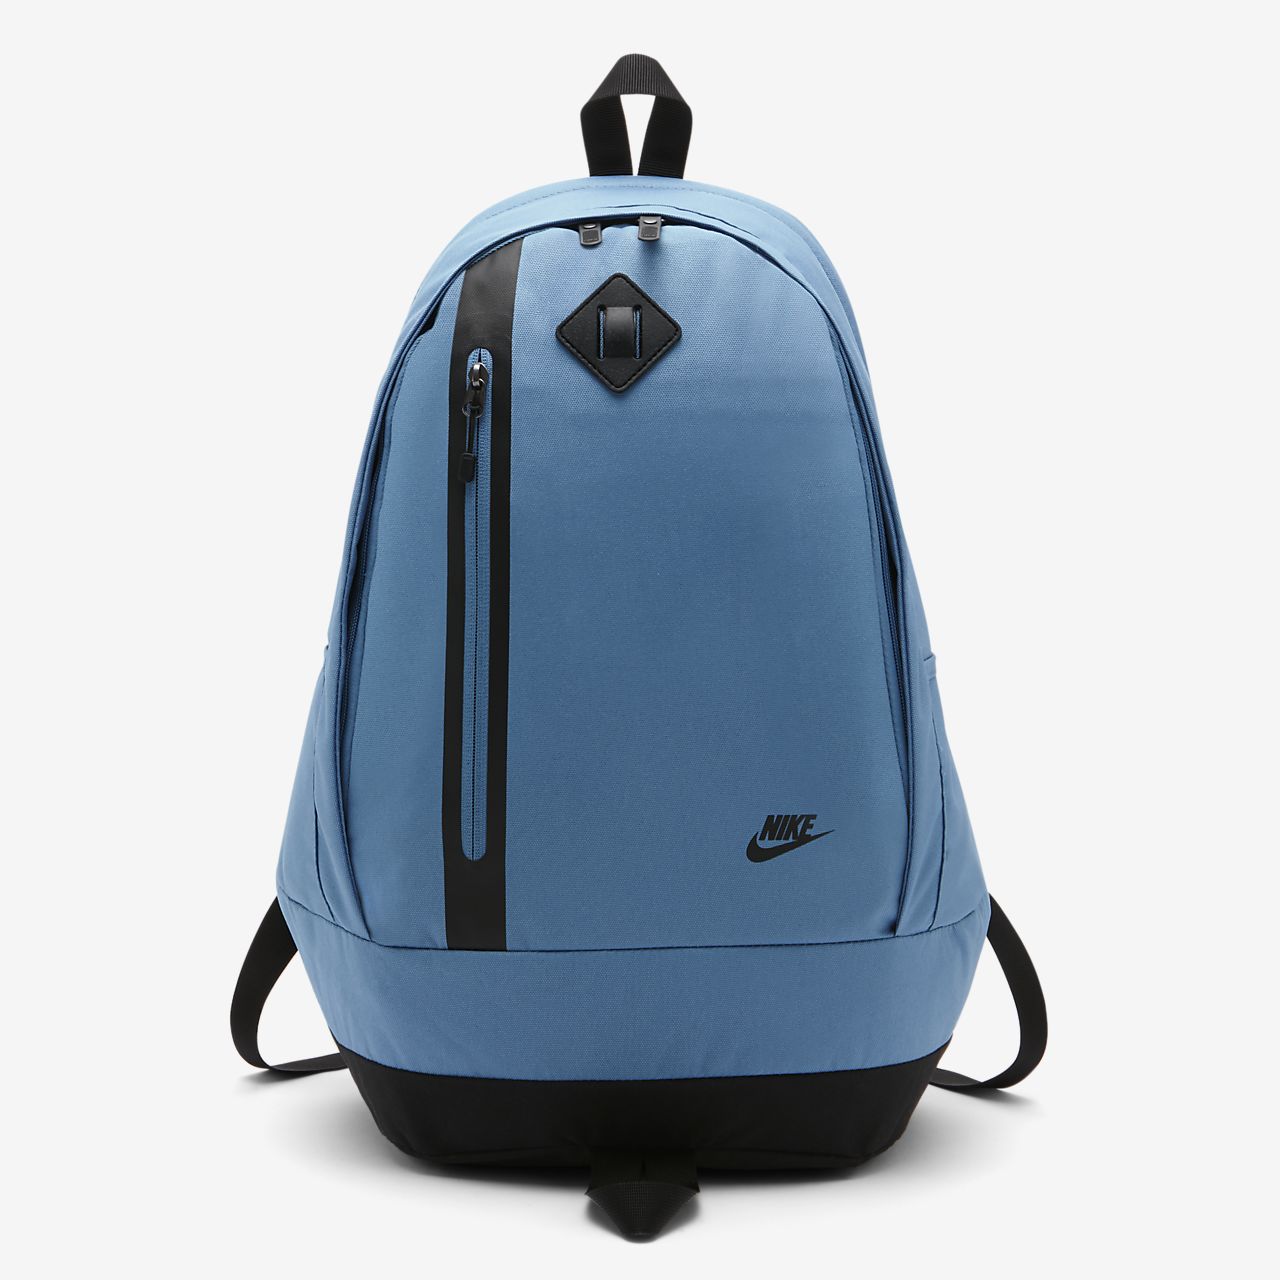 nike cheyenne backpack